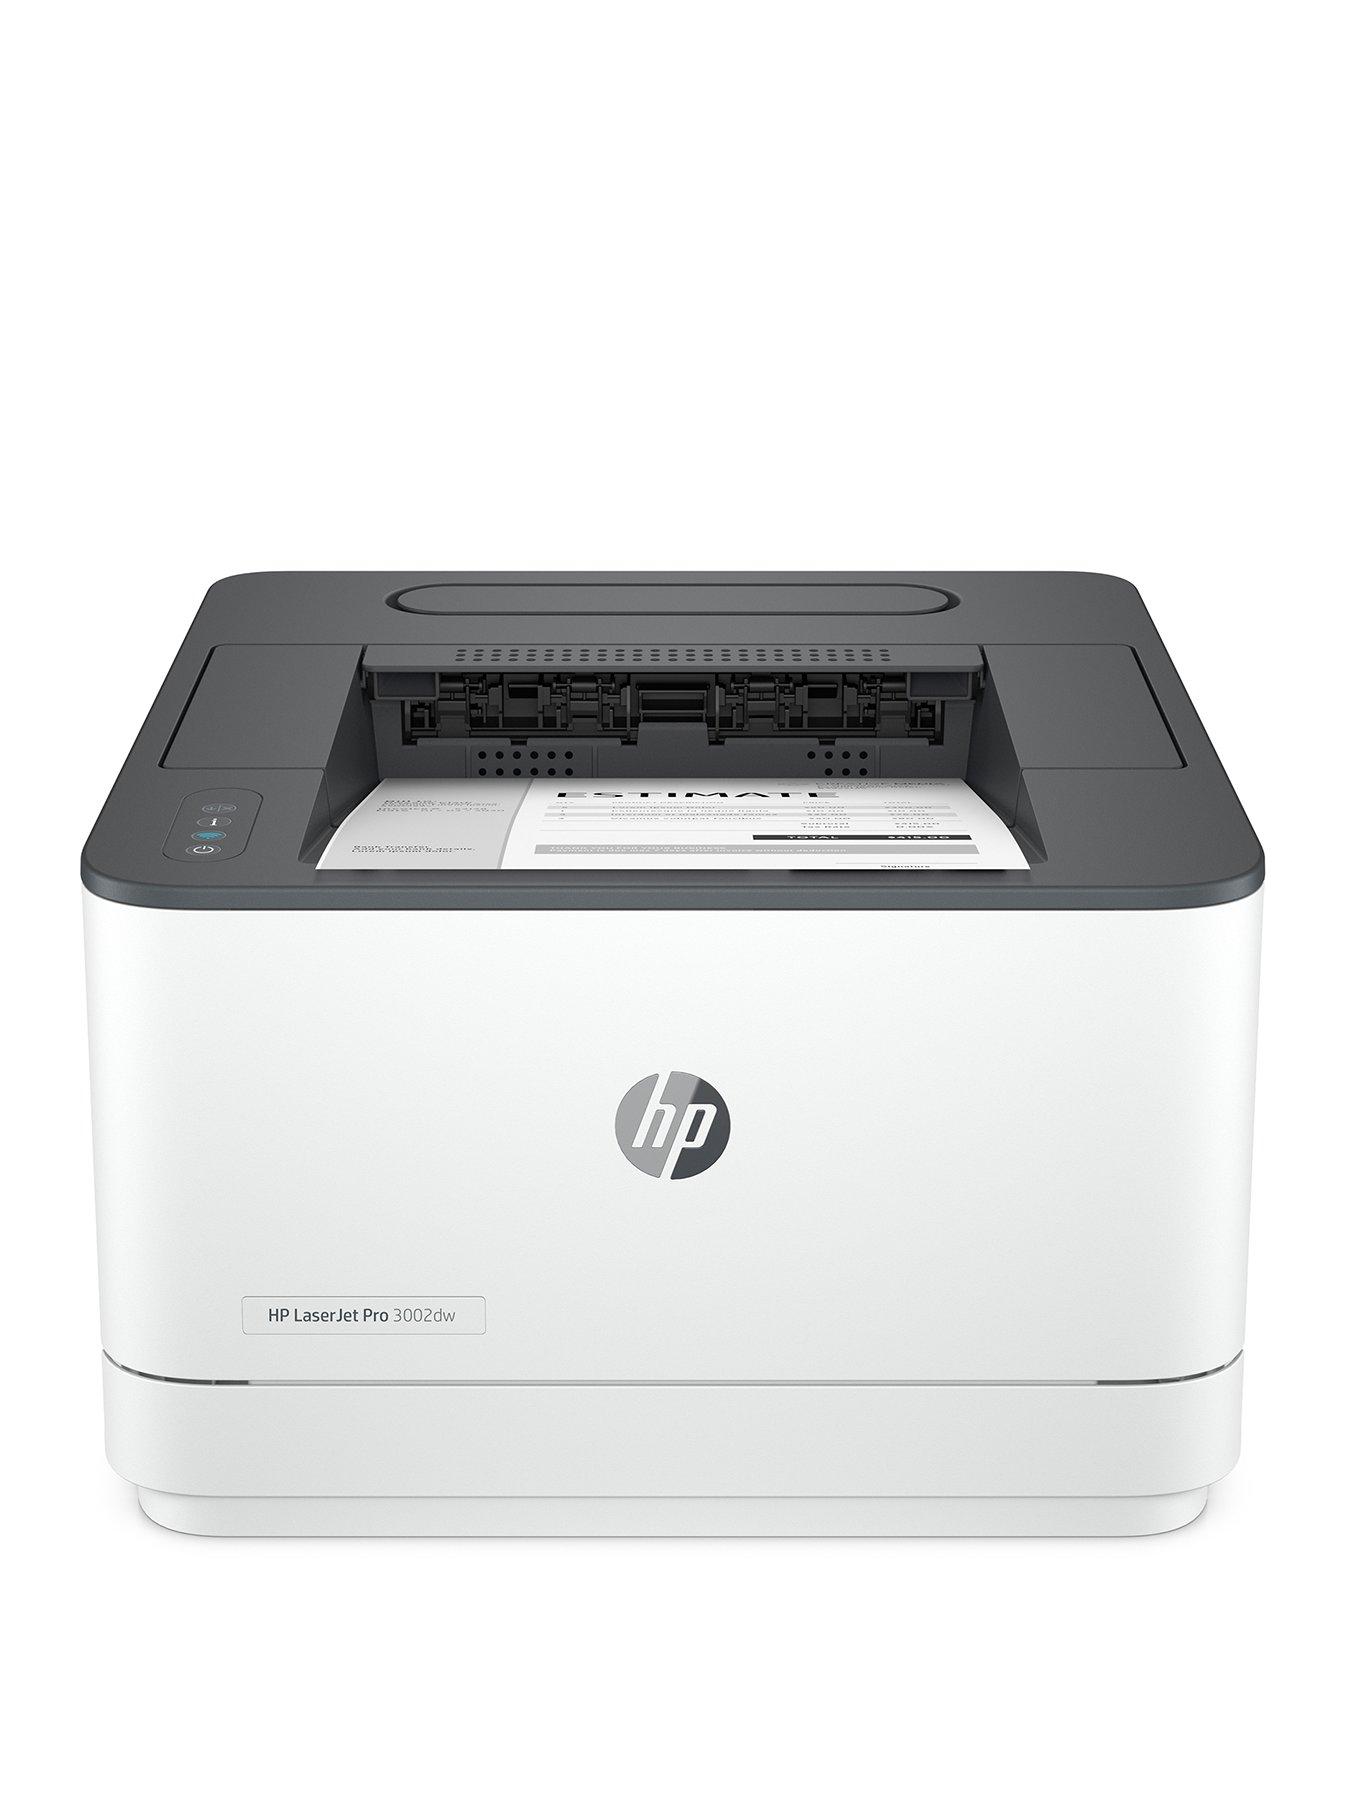 Hp Laserjet Pro 3002Dw Black  White Wireless Printer